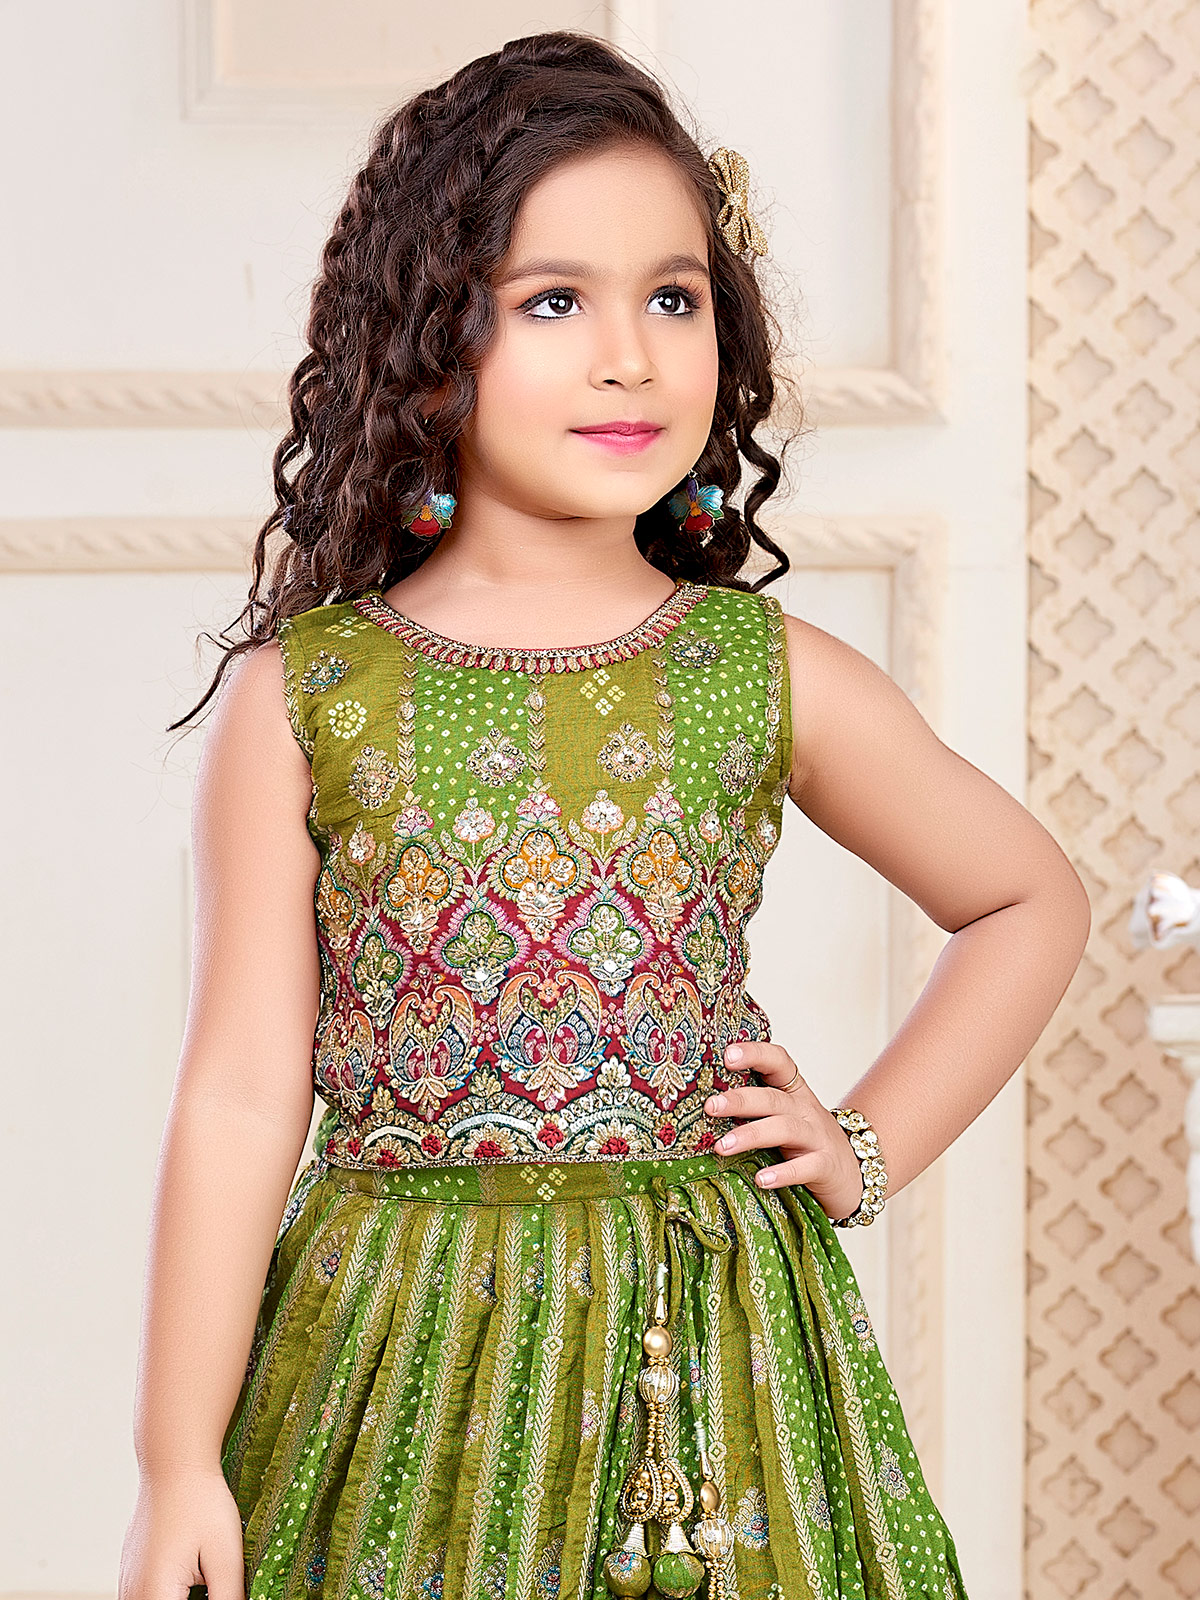 Buy South Indian Traditional dress for Kids & Girls | Langa Blosue | Pattu  pavadai | Lehenga Choli (16) at Amazon.in